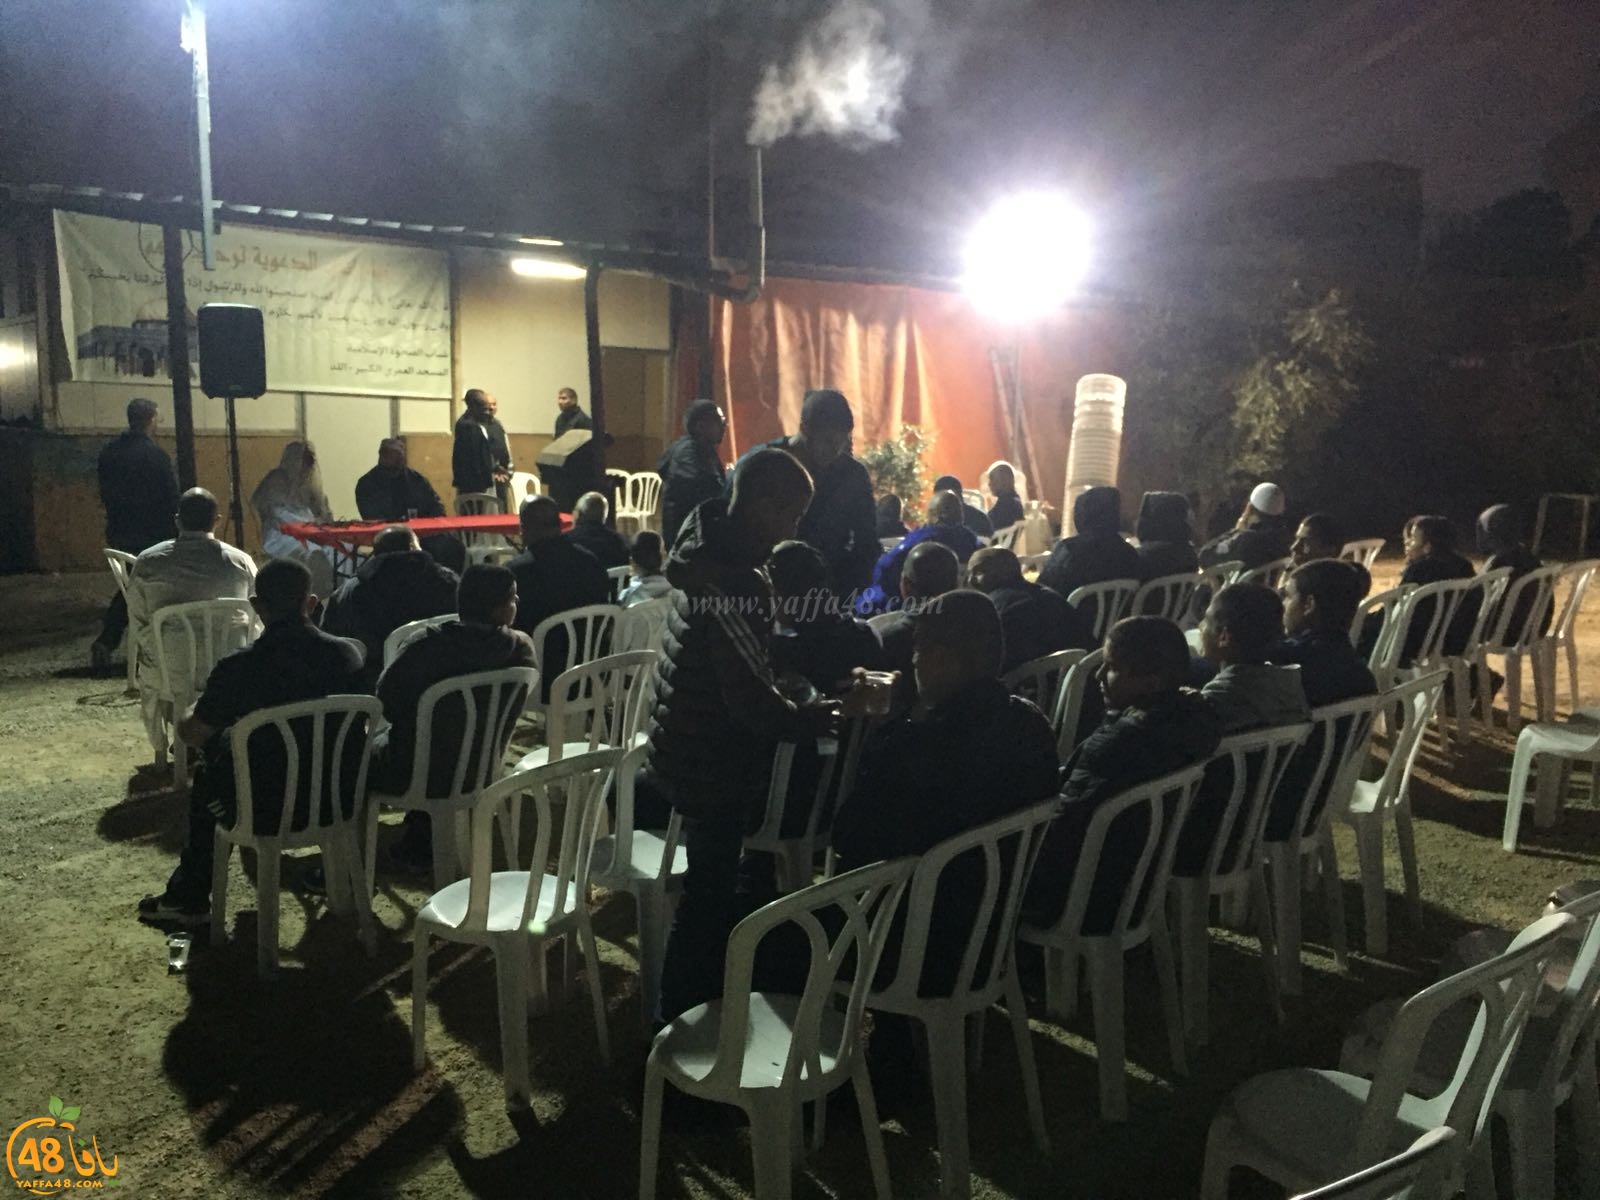 اللد: لجنة نشر الدعوة تختم سلسلة خيام النور لشهر آذار بأمسية ايمانية في حي شنير